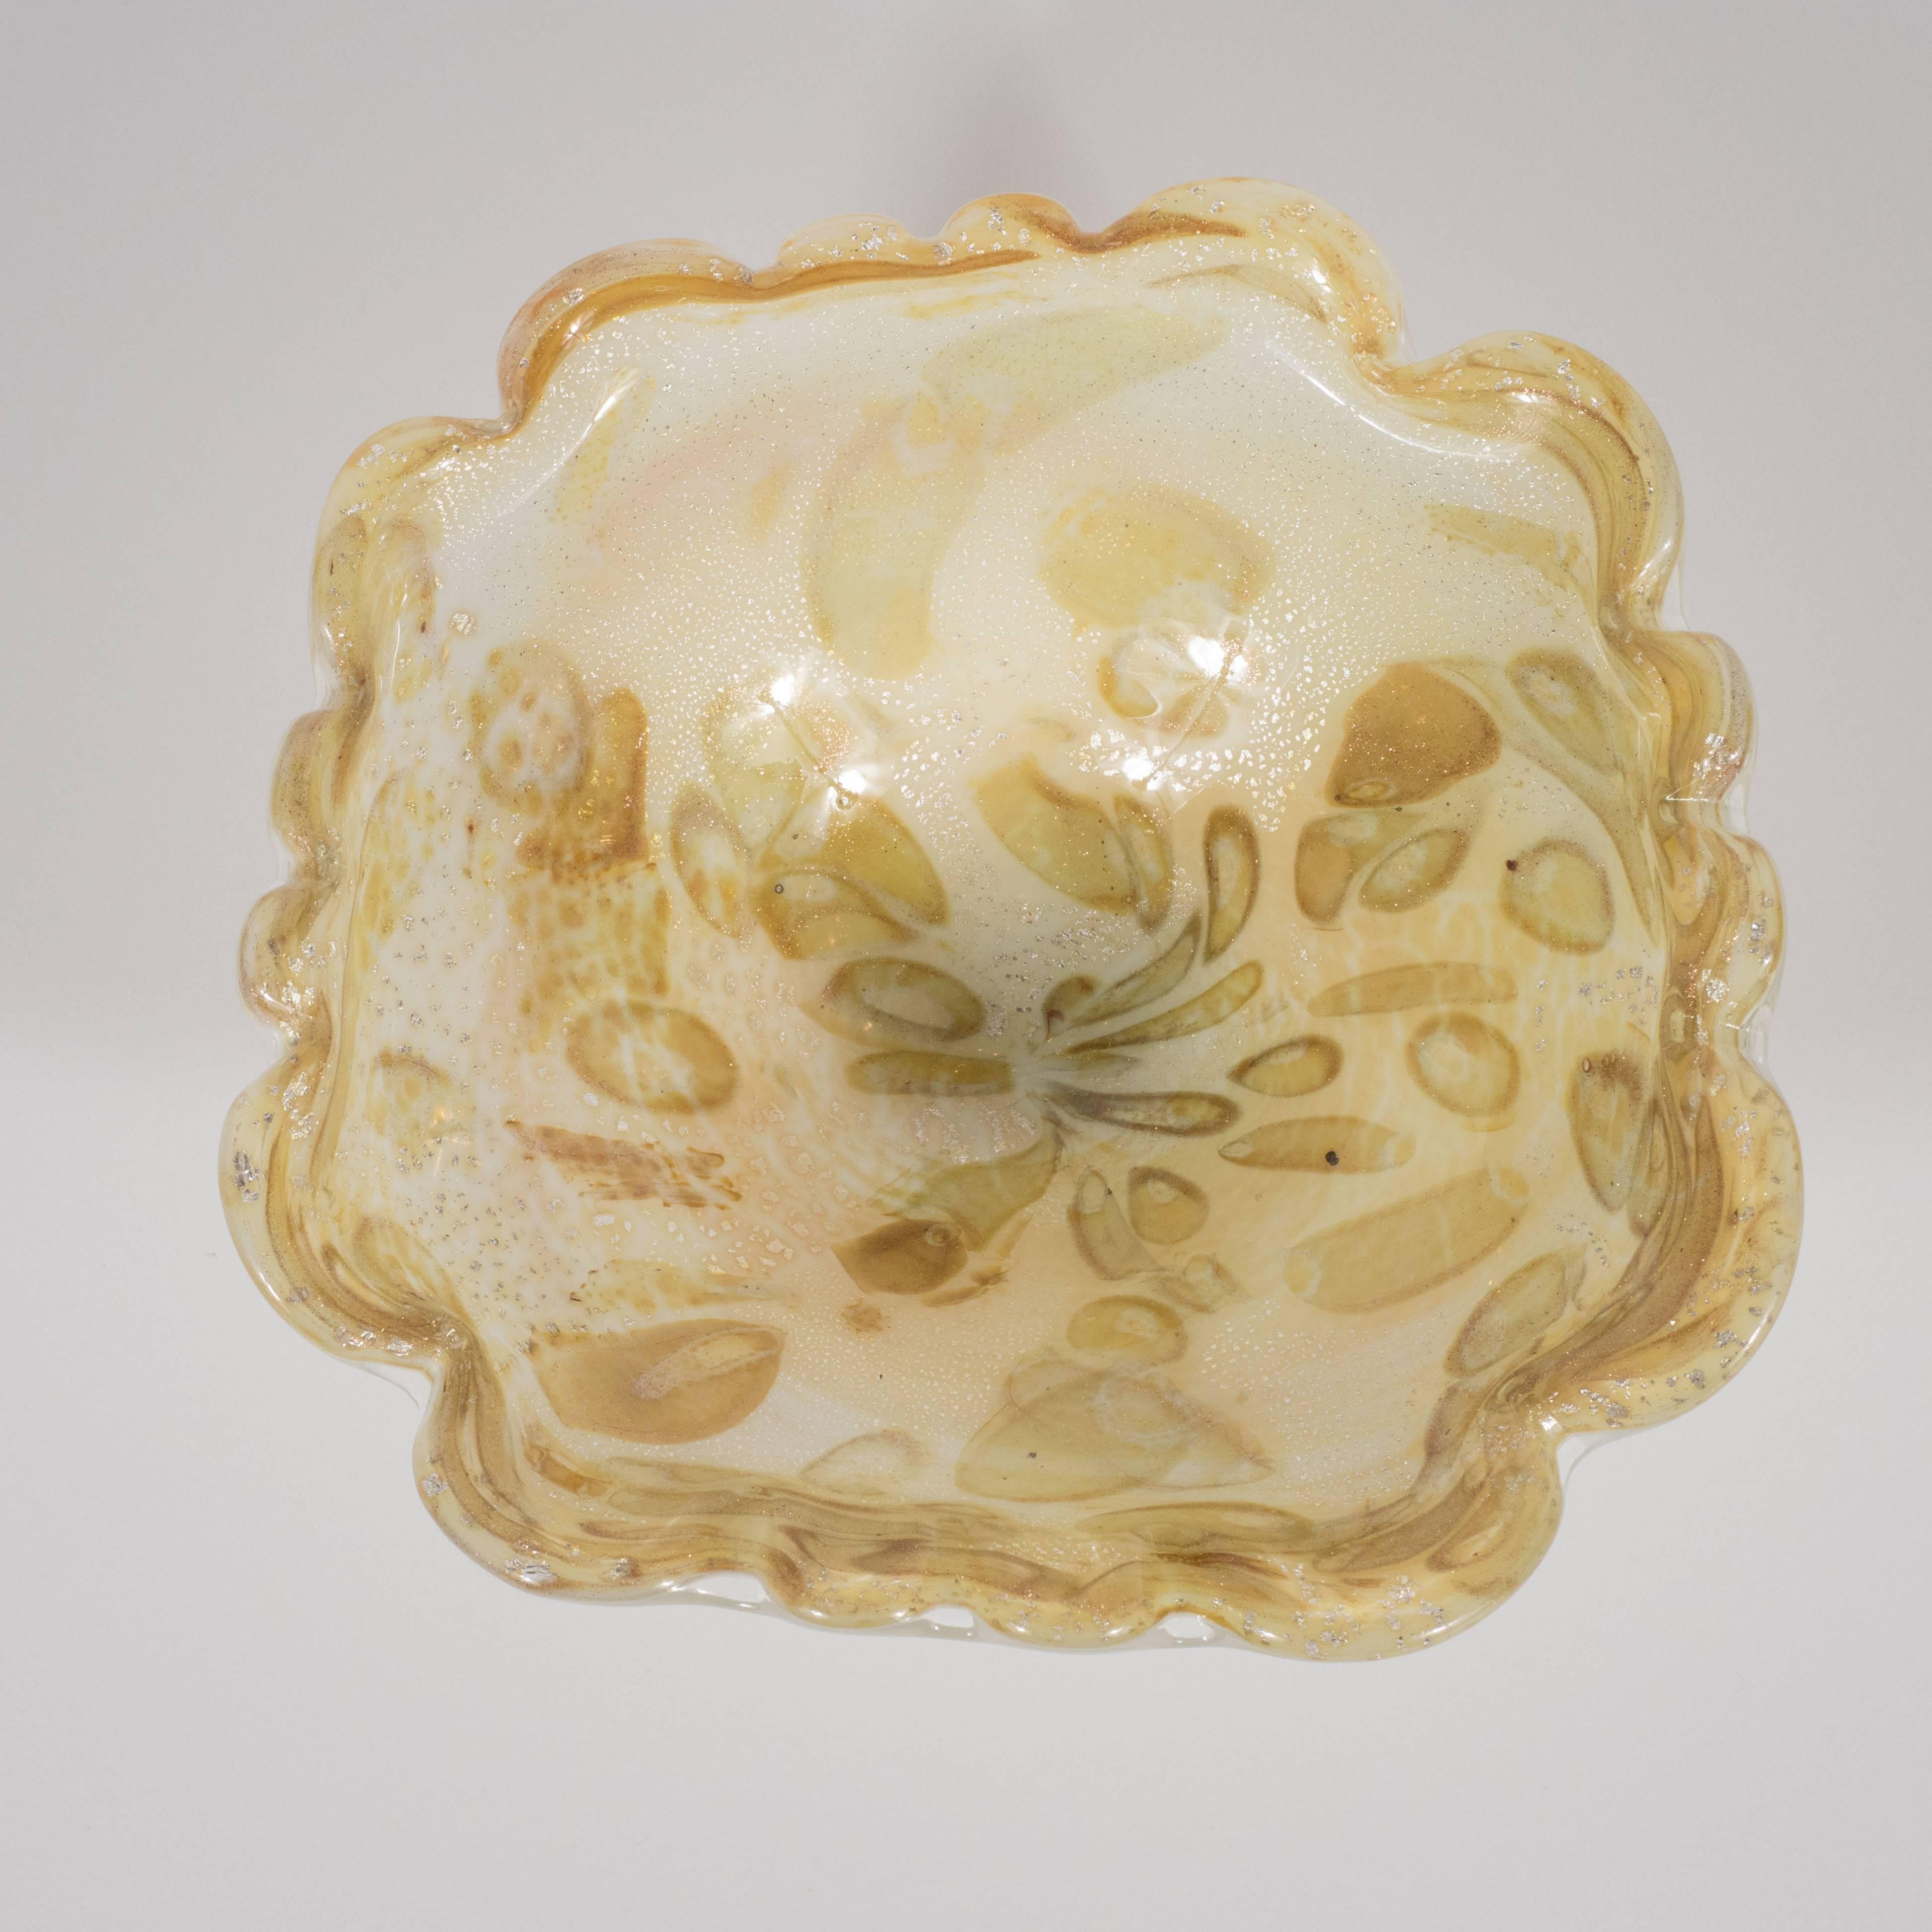 Diese atemberaubende Schale aus mundgeblasenem Muranoglas hat einen gewellten Rand und eine Fülle von gespenstischen Formen in Champagner-, Austernschalen- und Pistazientönen, die von der Mitte ausgehen, sowie eine Fülle von weißen Goldflecken. Mit